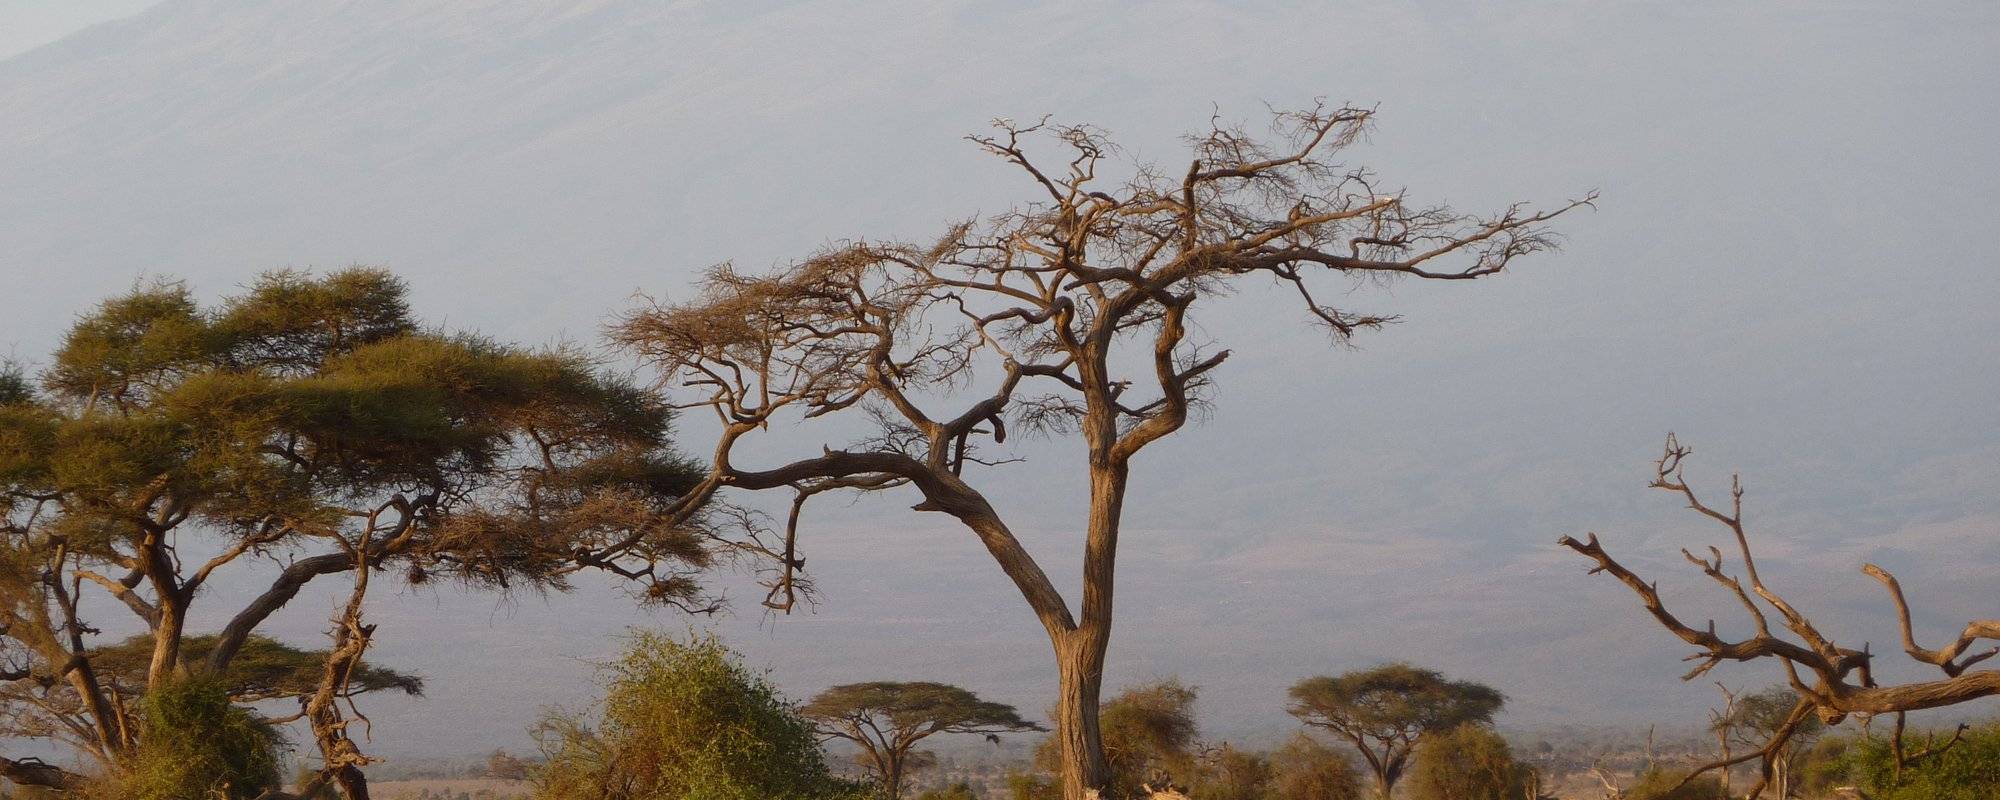 Kenya Safari - Tsabo East & West, Amboseli National Park